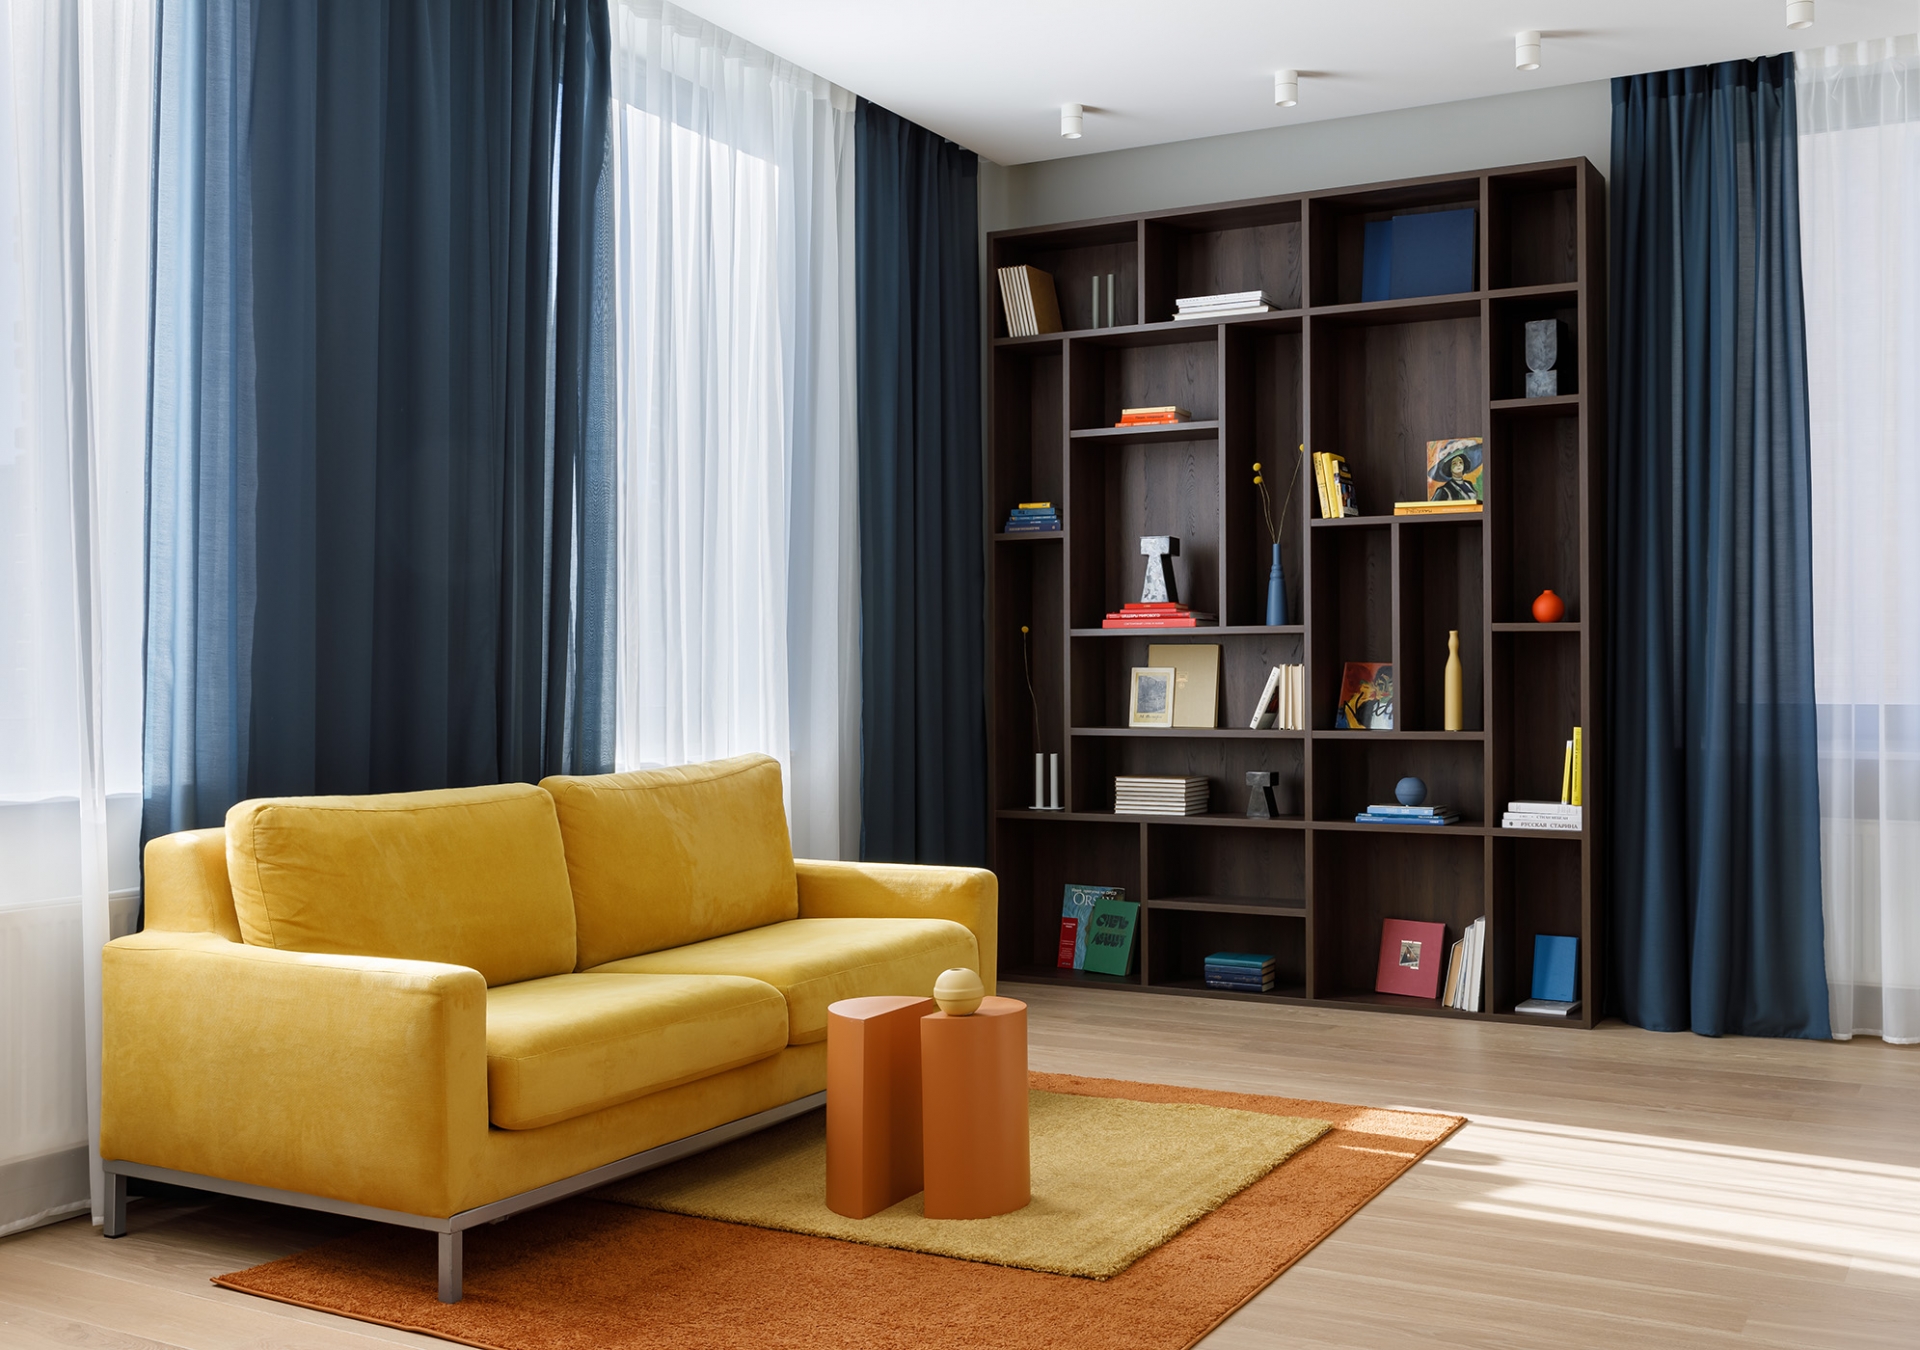 Phòng khách rộng rãi với ghế sofa được chuyển đến từ căn hộ cũ, tuy nhiên NTK đã chọn thay bọc vải mới có gam màu vàng tươi sáng. Lựa chọn này cũng rất 'tone sur tone' với bộ thảm trải sàn vàng - cam từ thương hiệu IKEA.